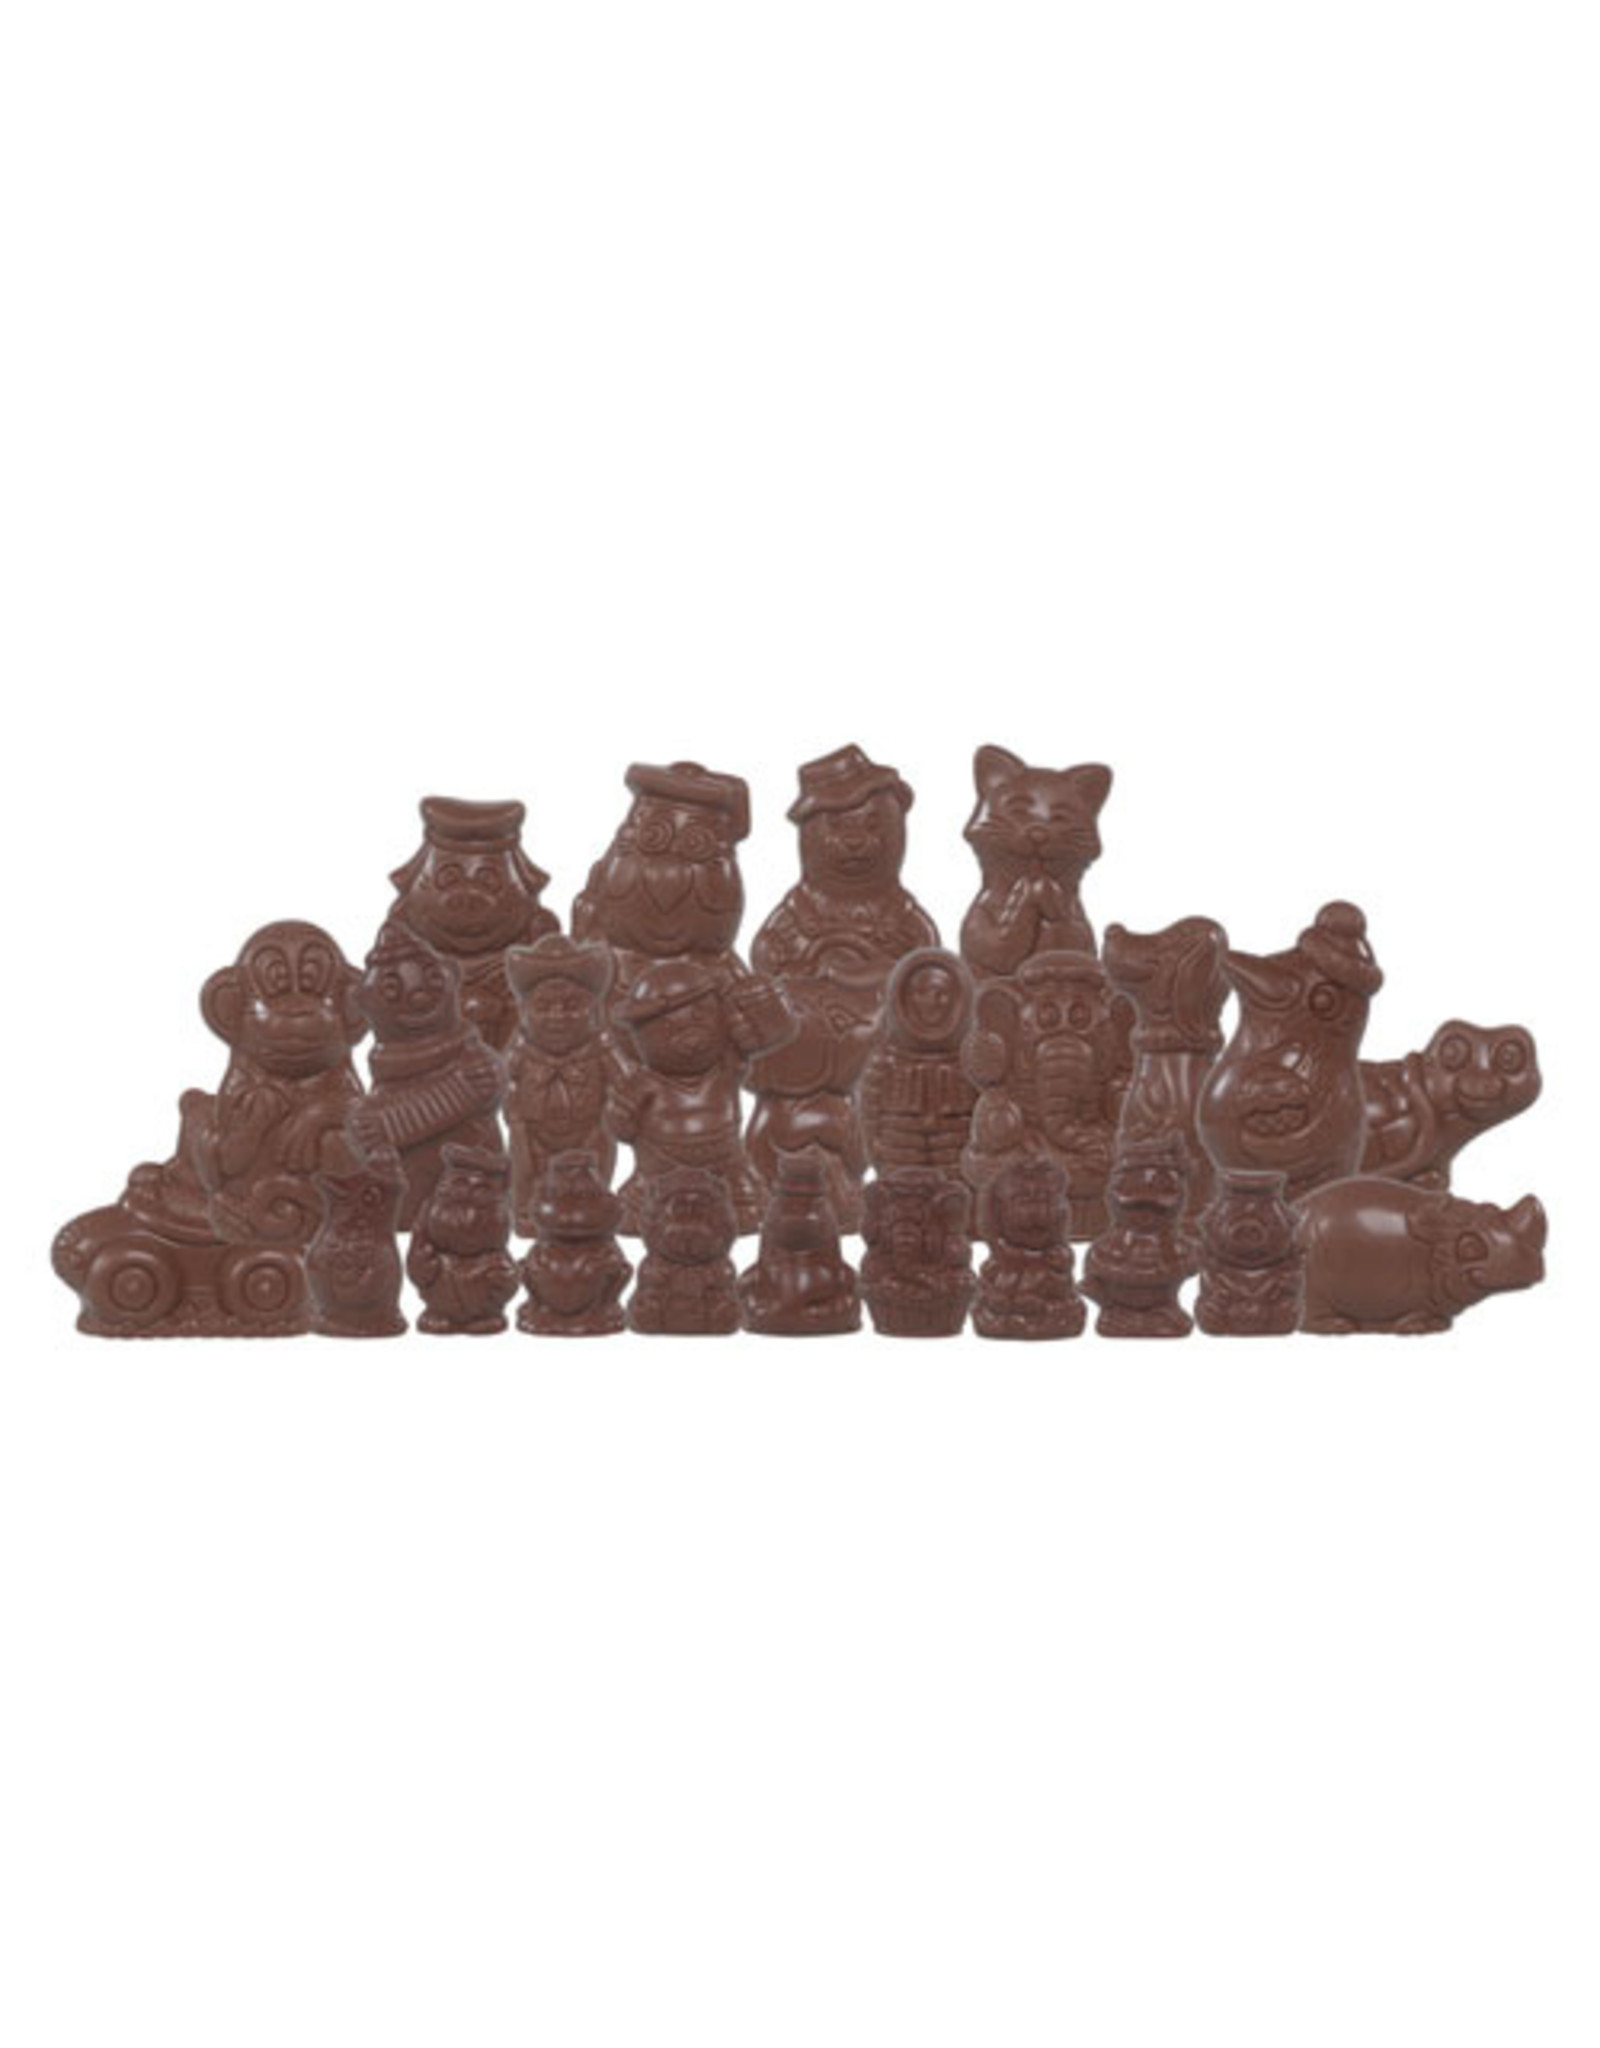 VOORDEEL - Sinterklaasfiguren - Doos 2 kg -  Callebaut chocolade